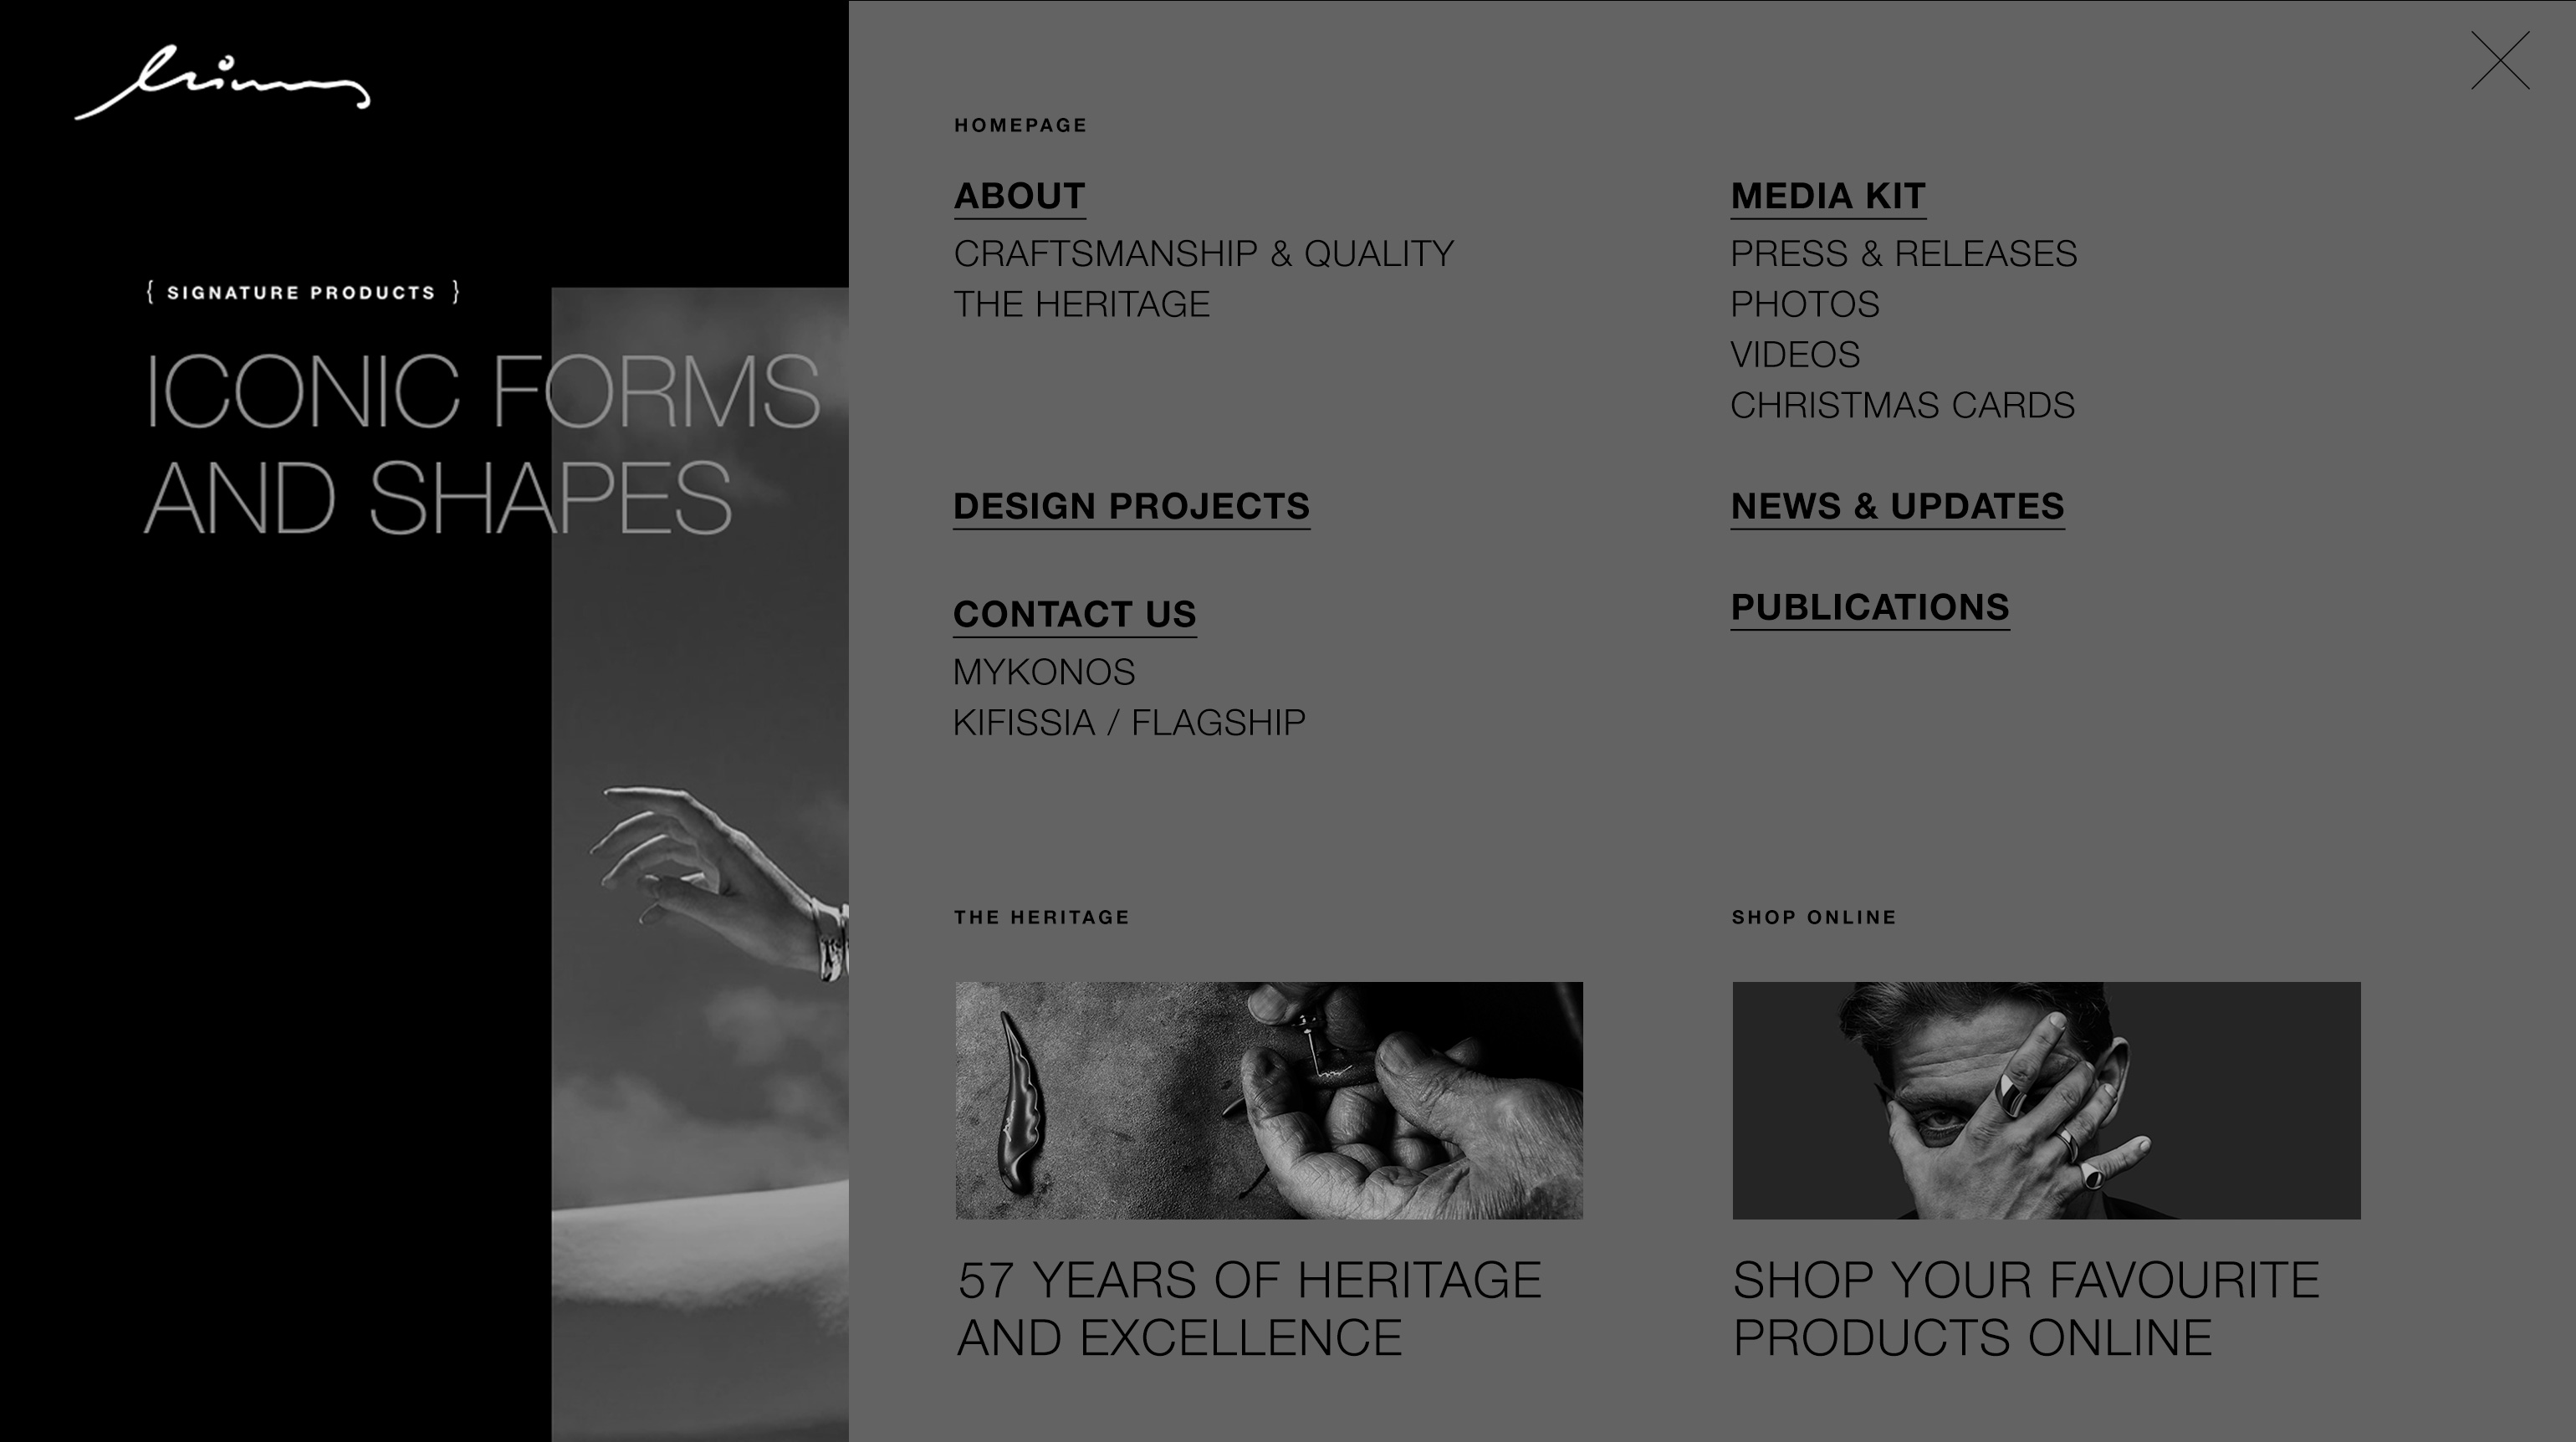 minas website design menu kommigraphics